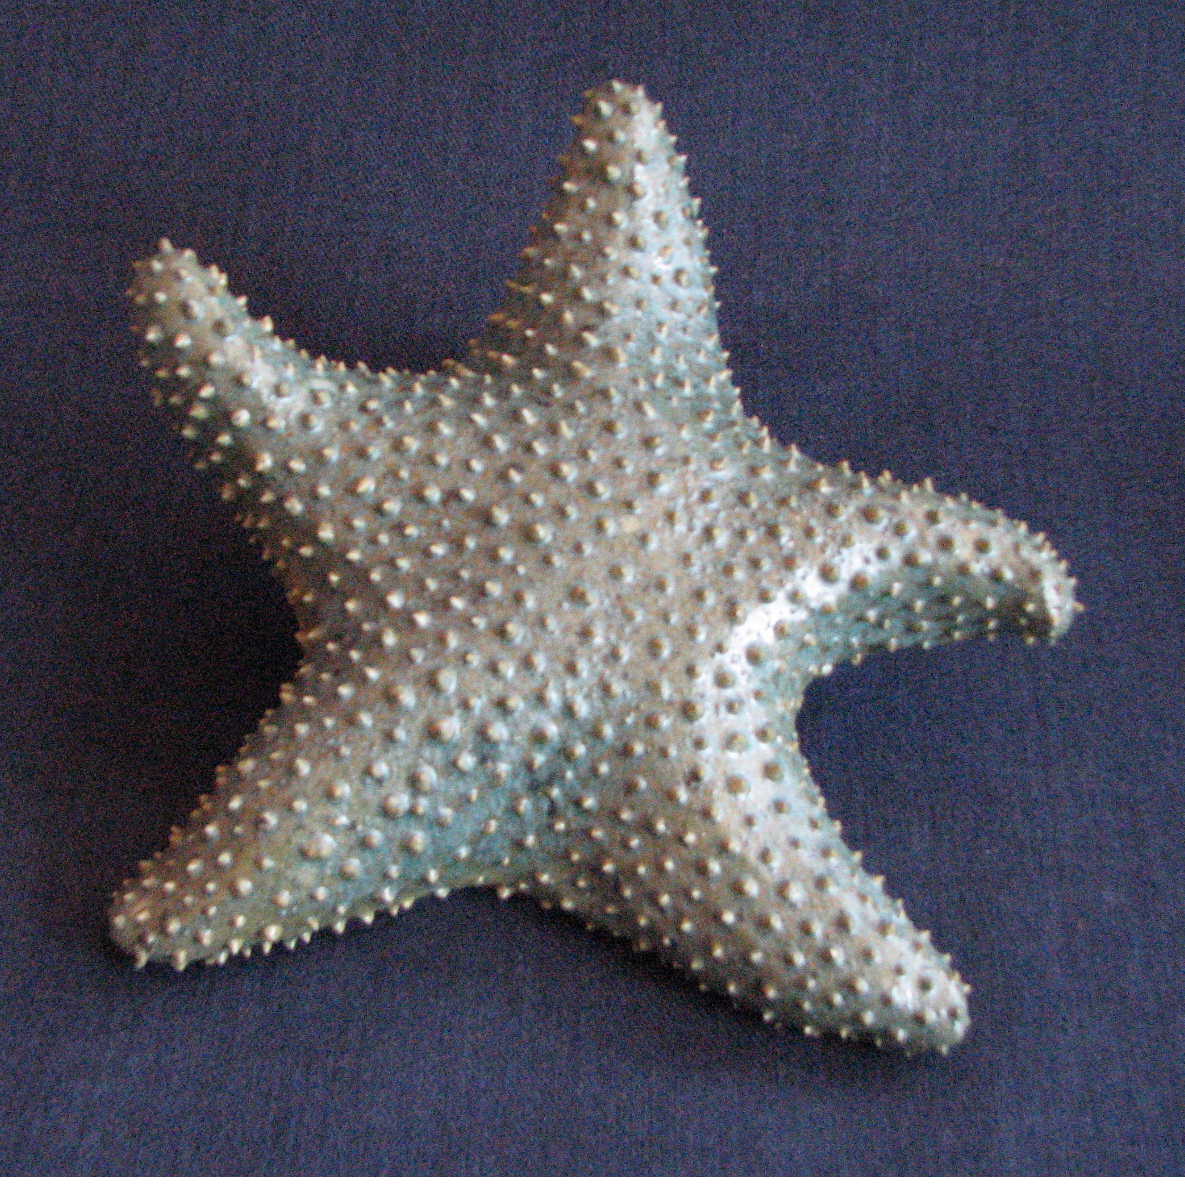 [starfish.Tim.30.JPG]